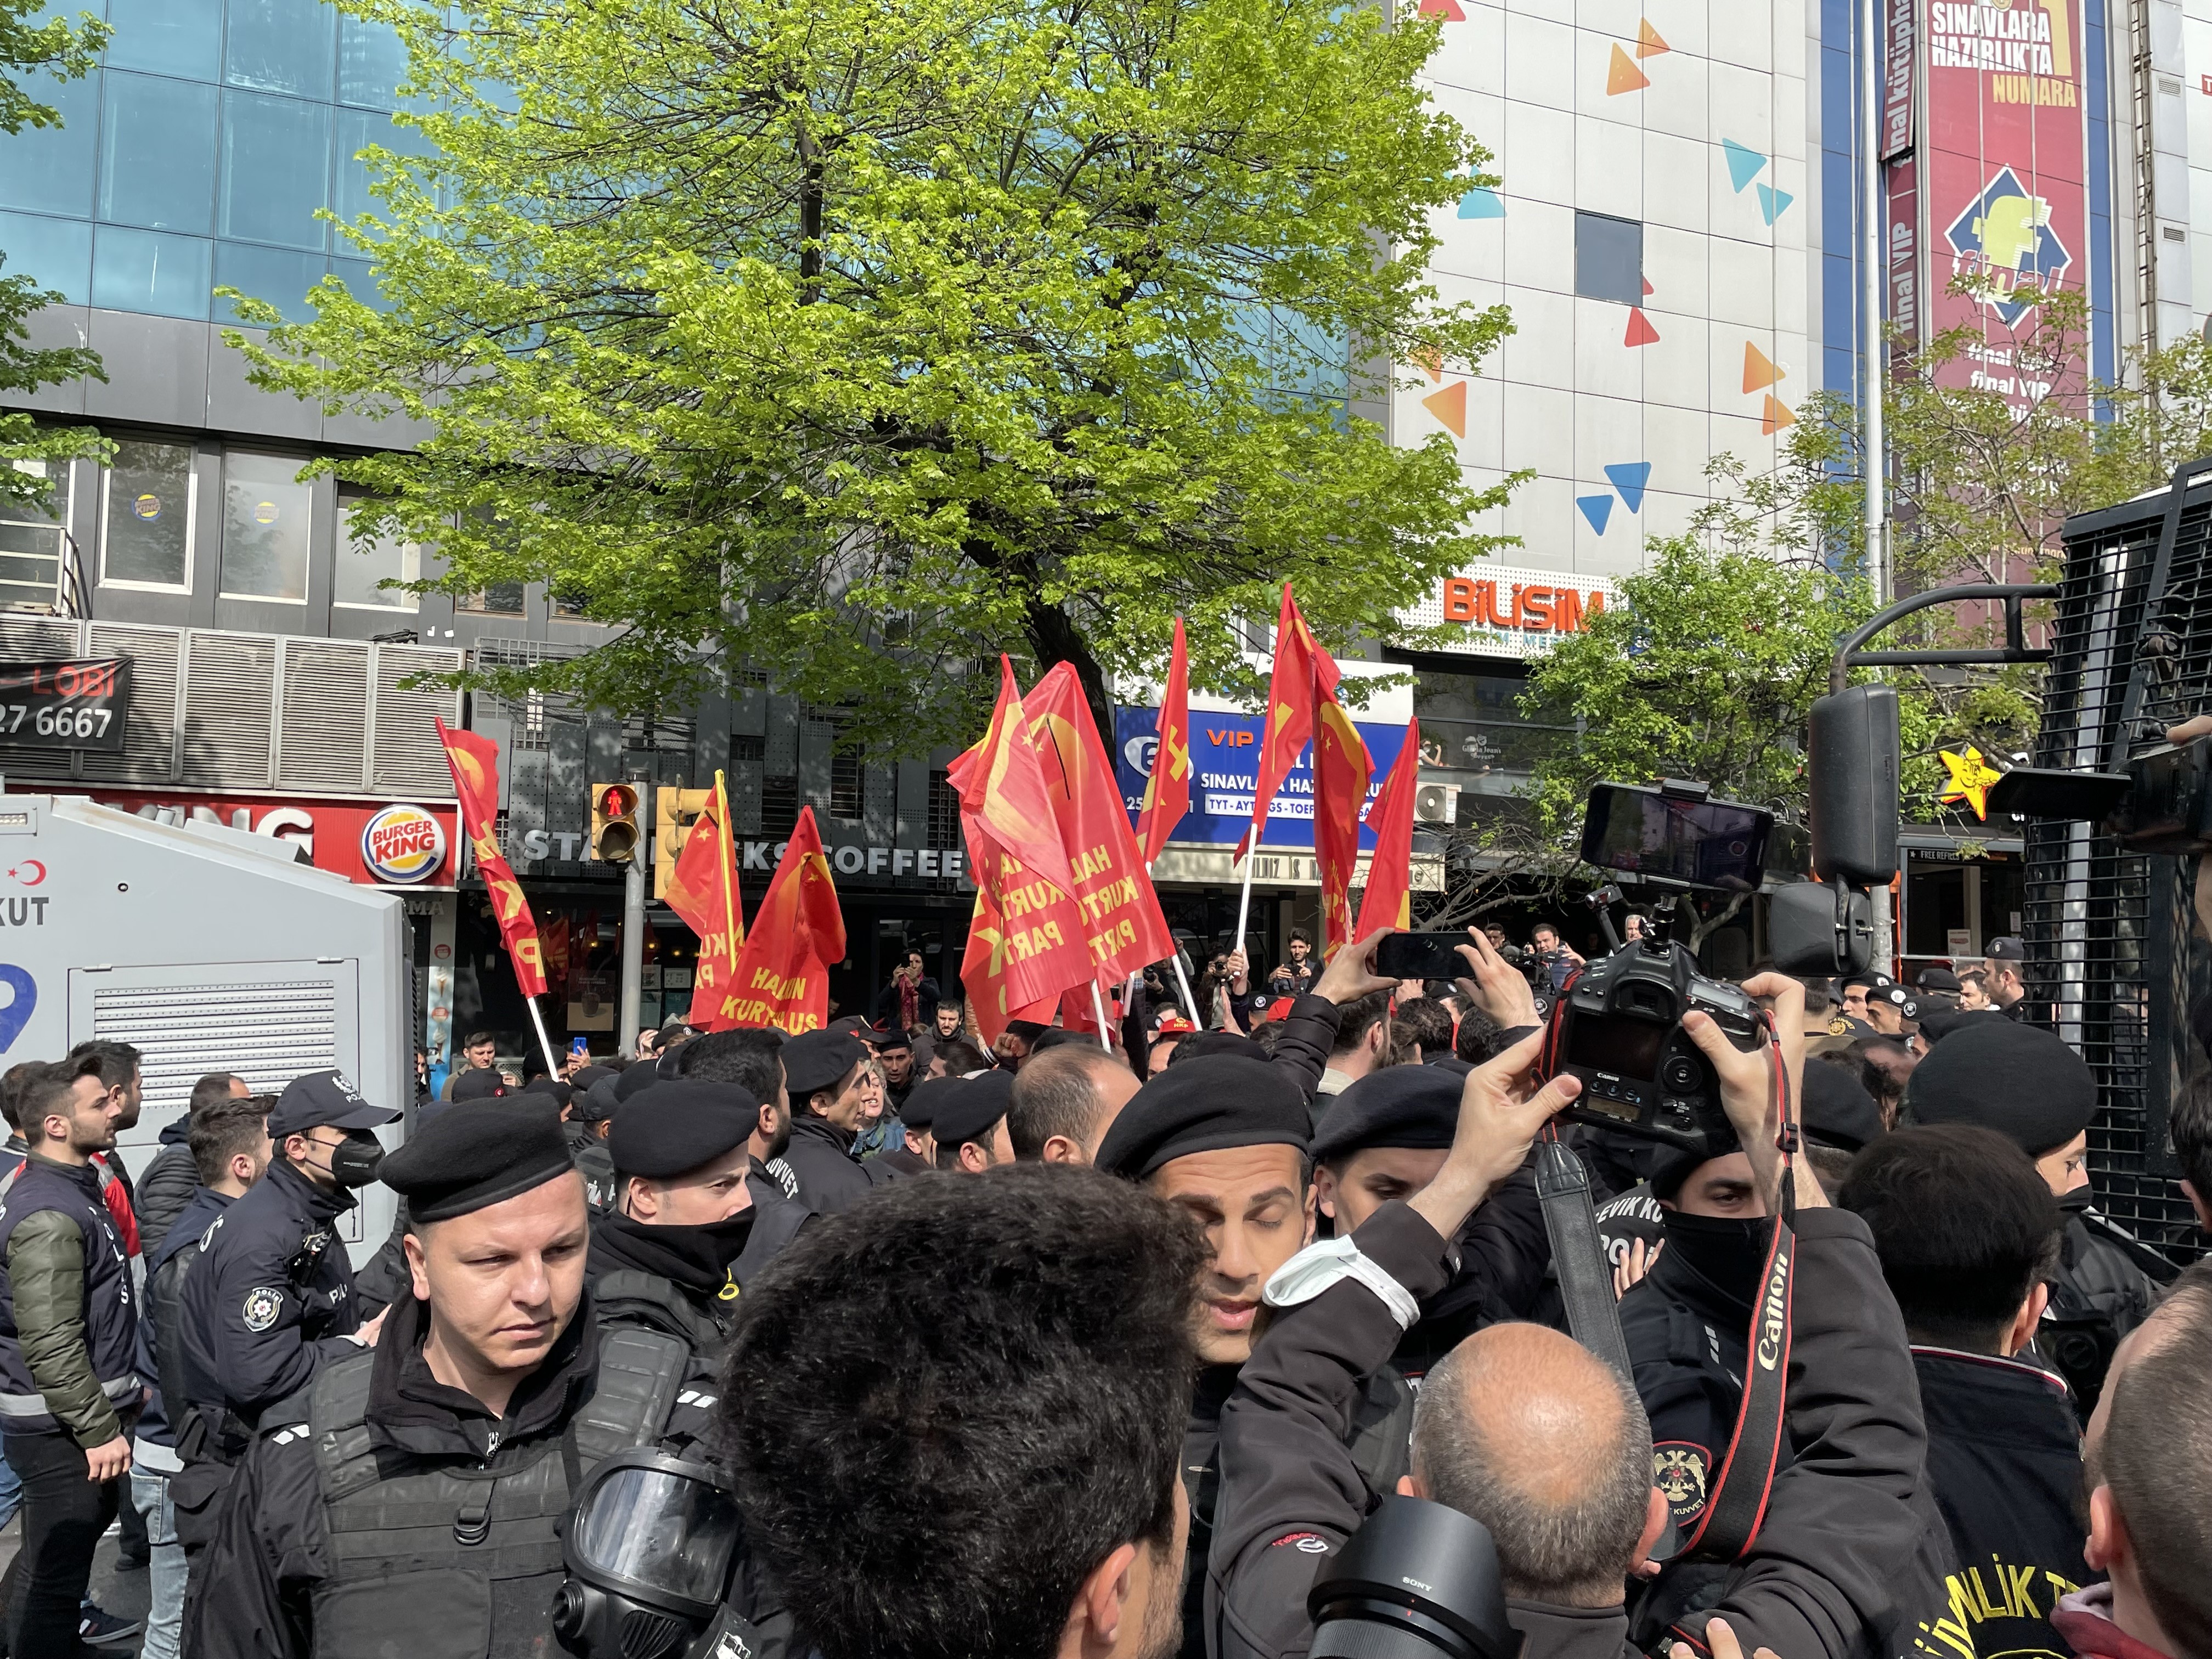 1 Mayıs Emek ve Dayanışma Günü'nde Beşiktaş Meydanı'nda polis ekiplerince yoğun güvenlik önlemleri alındı. Barbaros Bulvarı'nda toplanan bir grup, Beşiktaş Meydanı'nı geçerek izinsiz Taksim'e yürümek istedi.